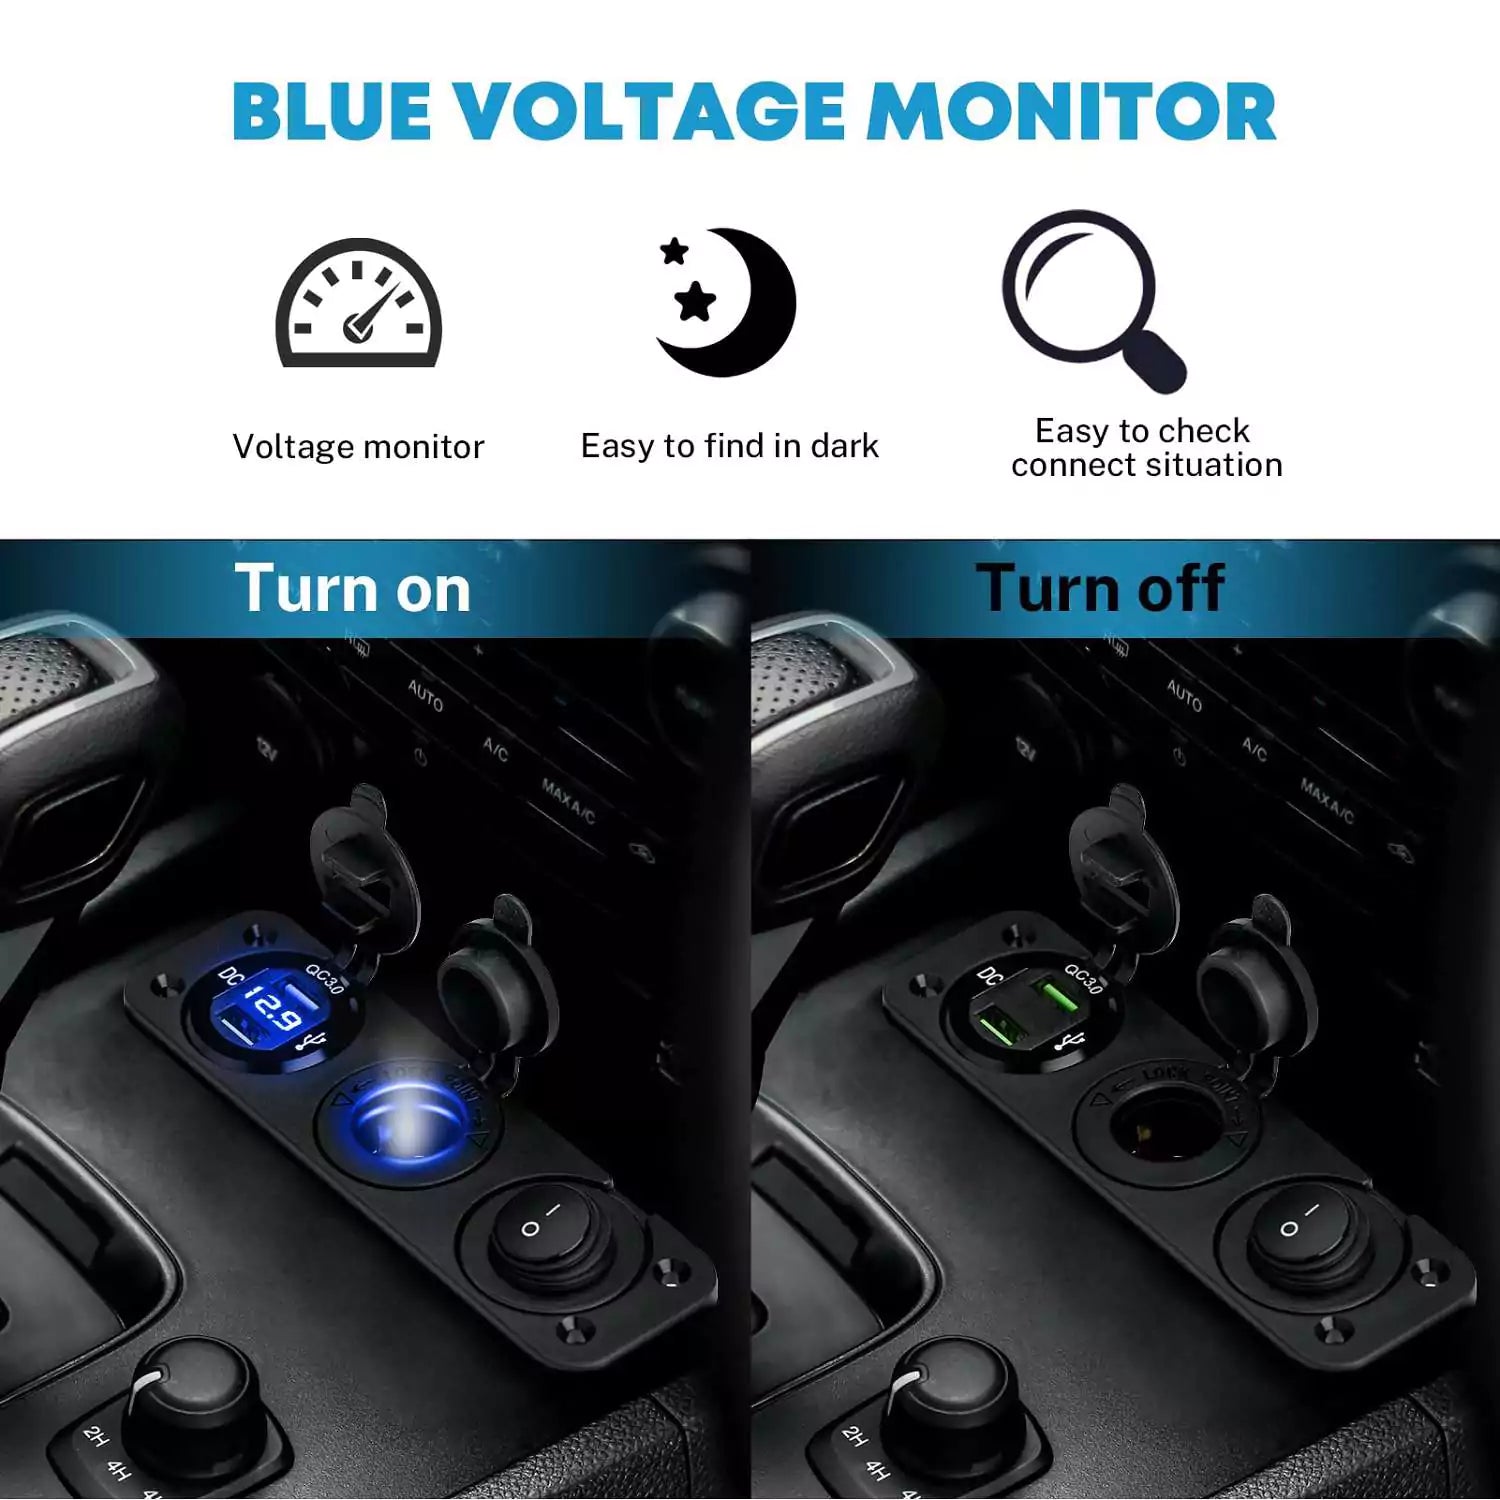 Blue voltage monitor cigarette lighter socket adapter